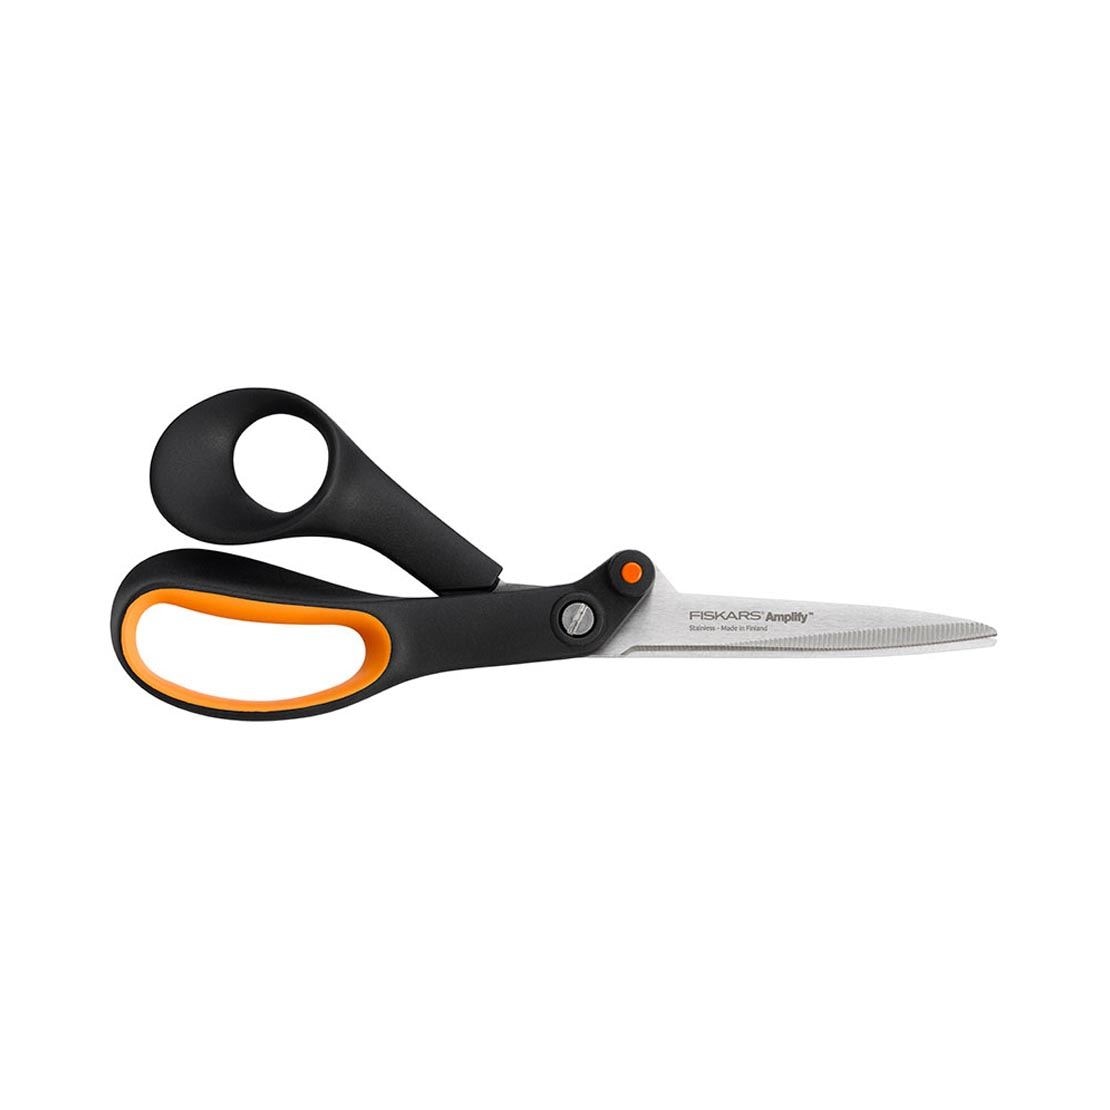 Fiskars heavy-duty scissors for jobsite, workshop or garage